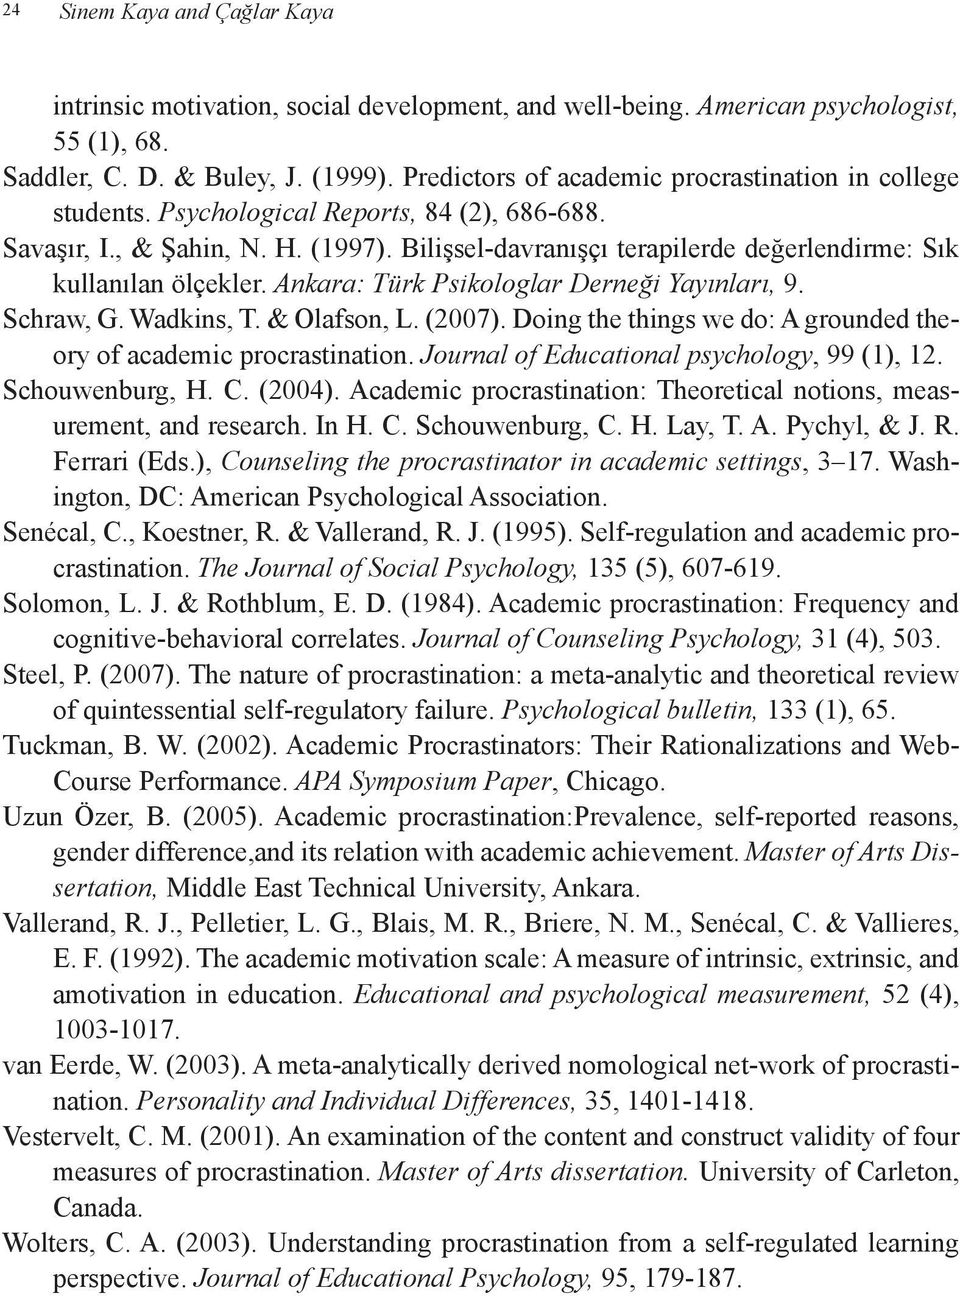 Bilişsel-davranışçı terapilerde değerlendirme: Sık kullanılan ölçekler. Ankara: Türk Psikologlar Derneği Yayınları, 9. Schraw, G. Wadkins, T. & Olafson, L. (2007).